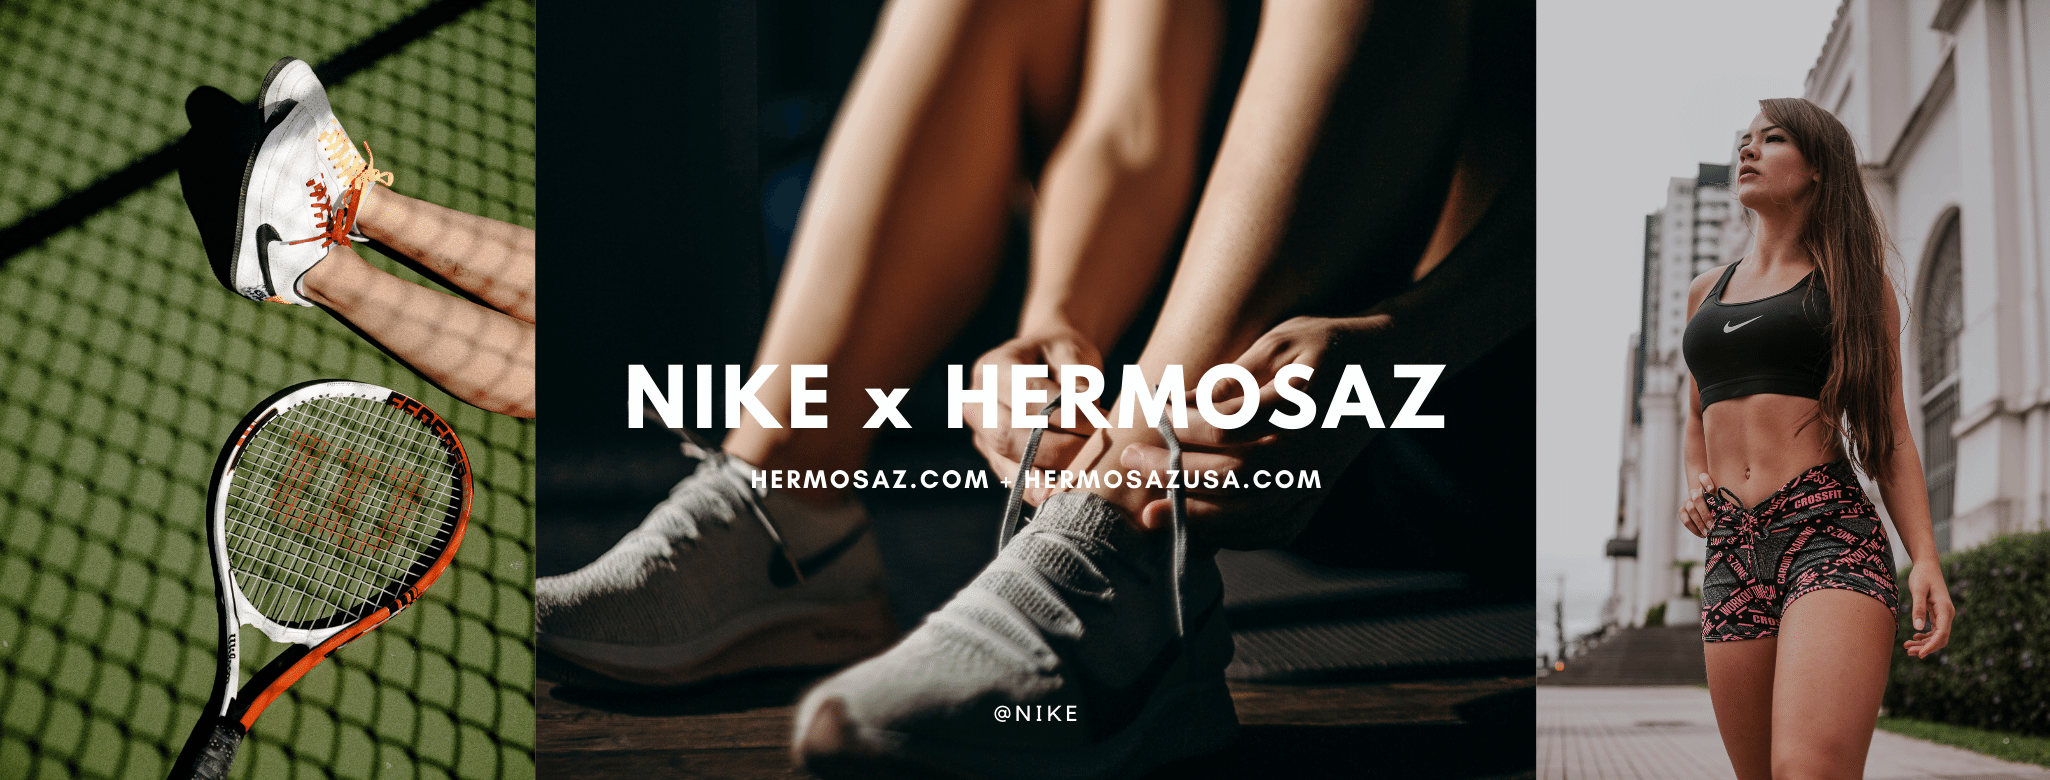 Nike x Hermosaz